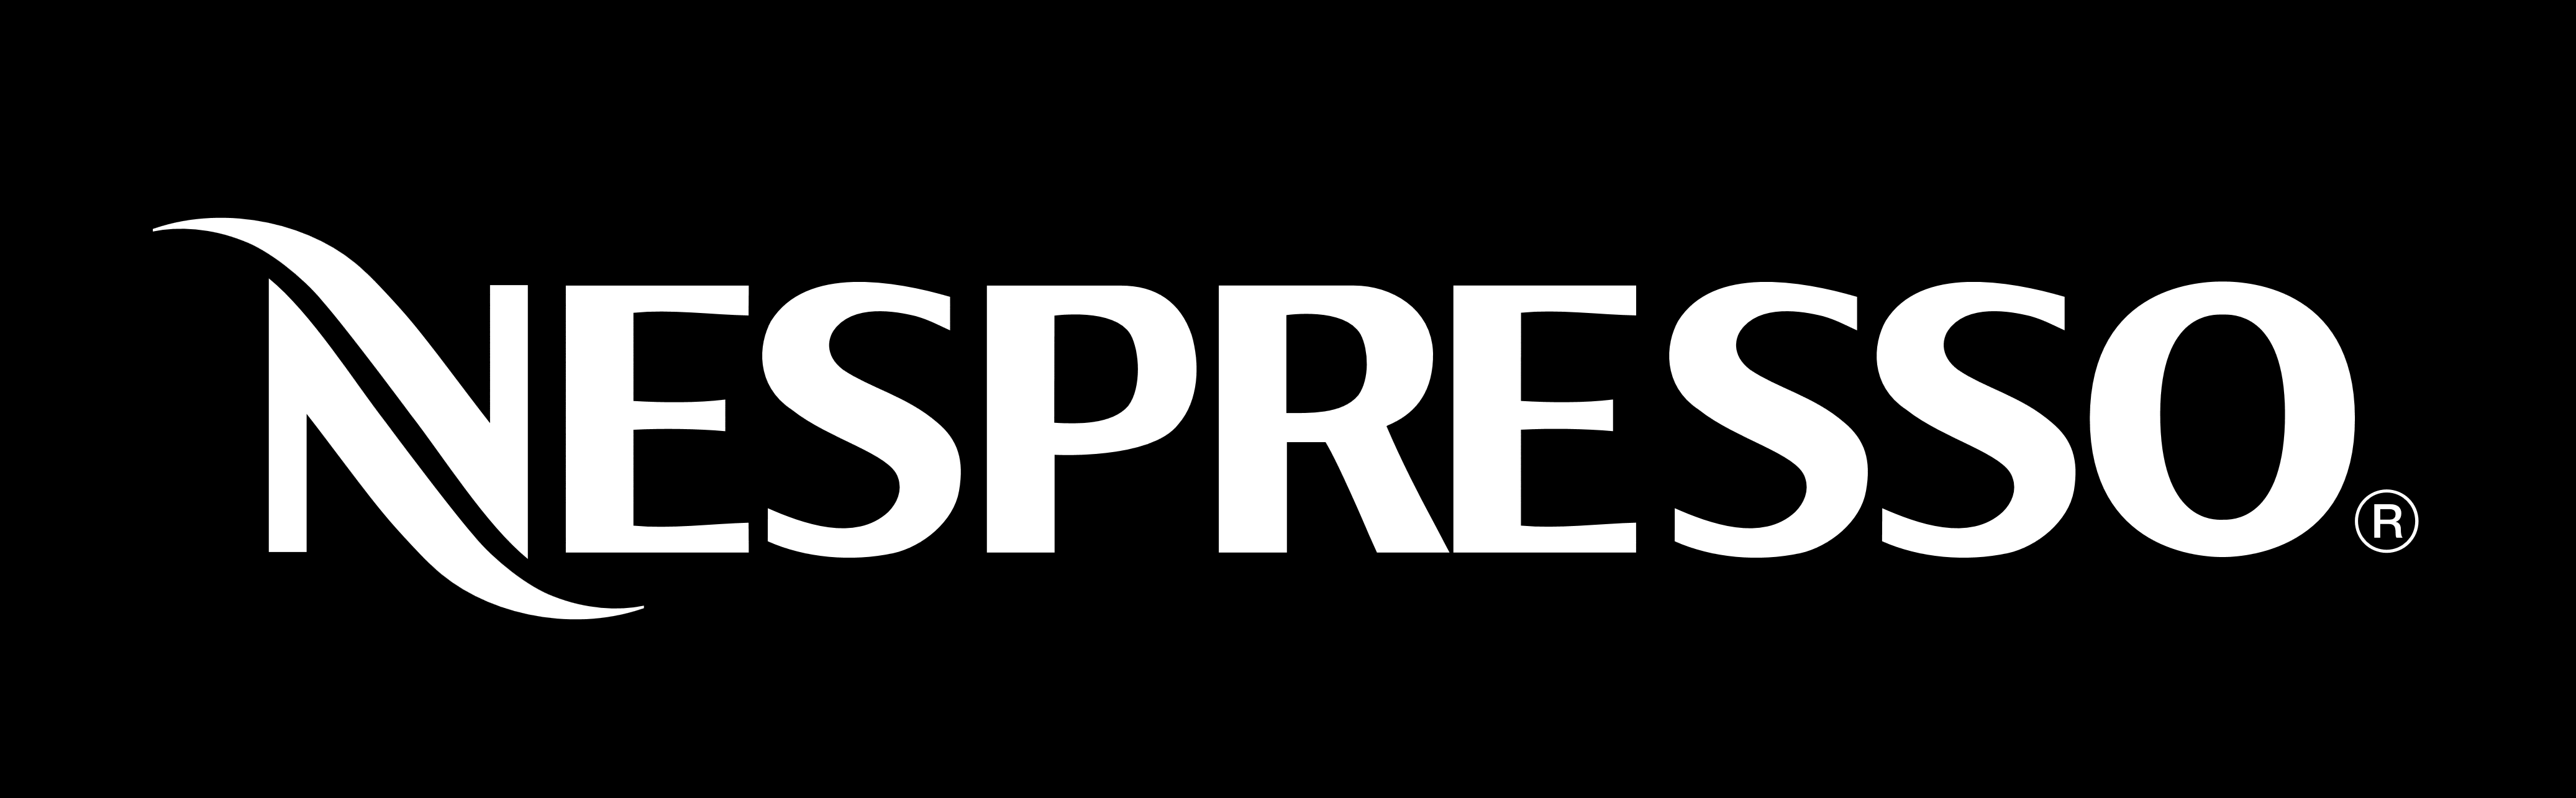 nespresso-logo